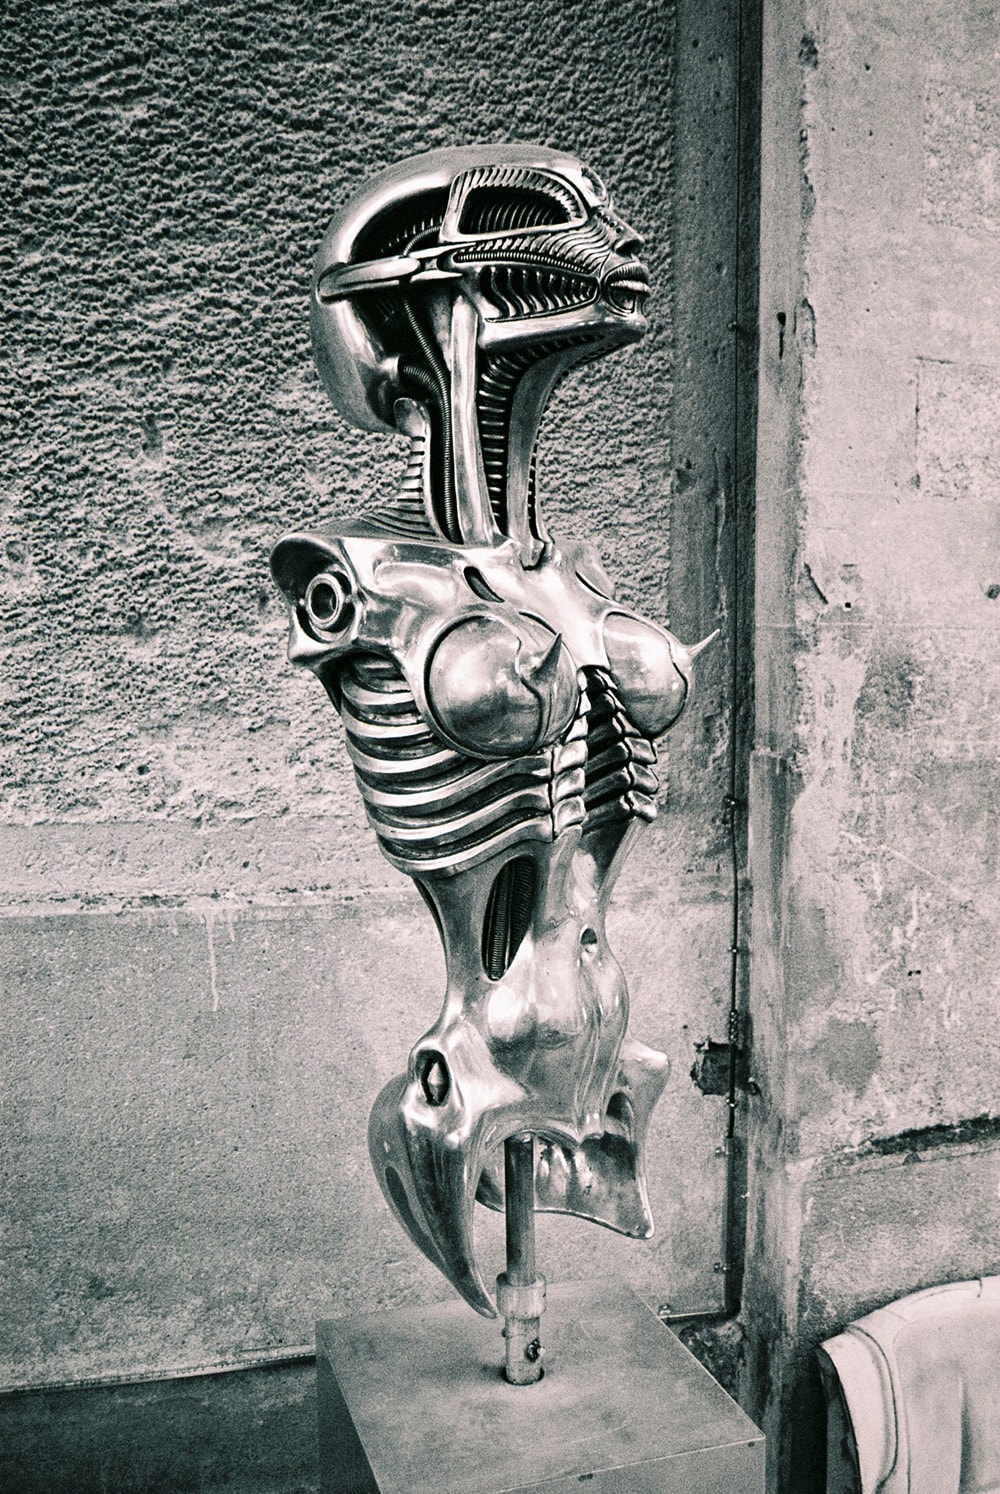 人間の肉体のパーツと、機械的造形とを融合した「バイオメカノイド」の作品。©HR Giger Museum